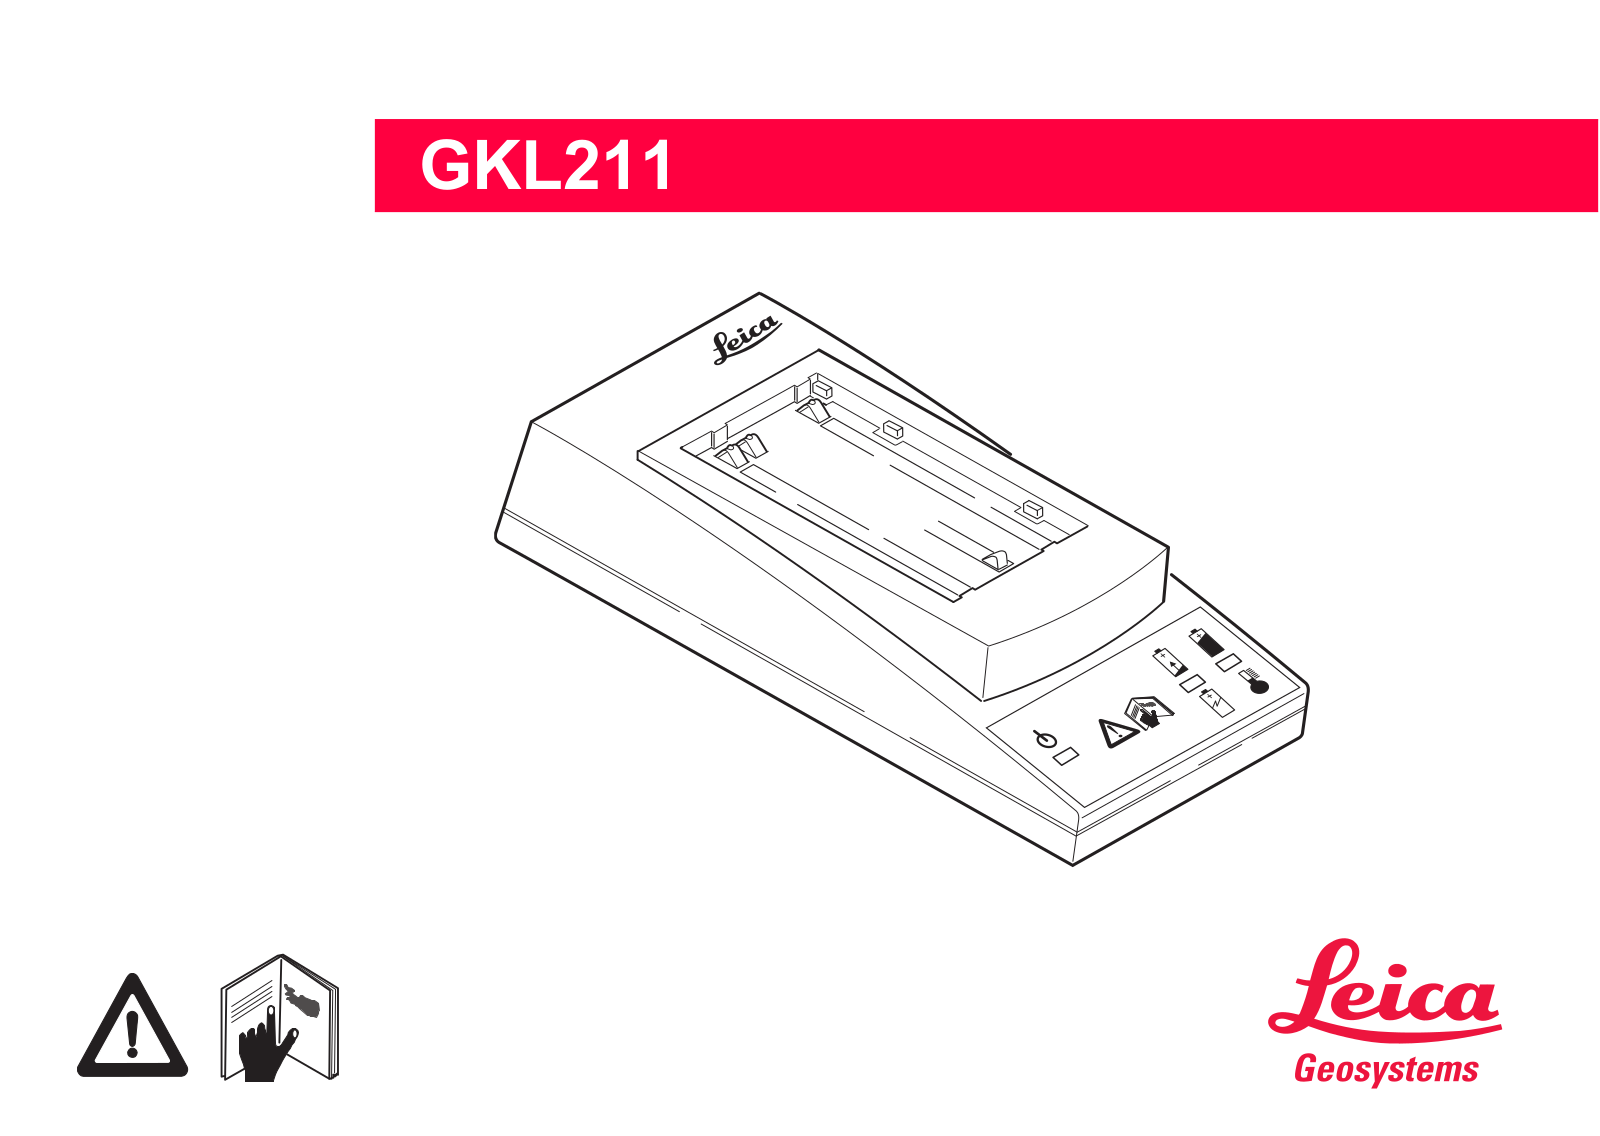 Leica GKL211 User Manual